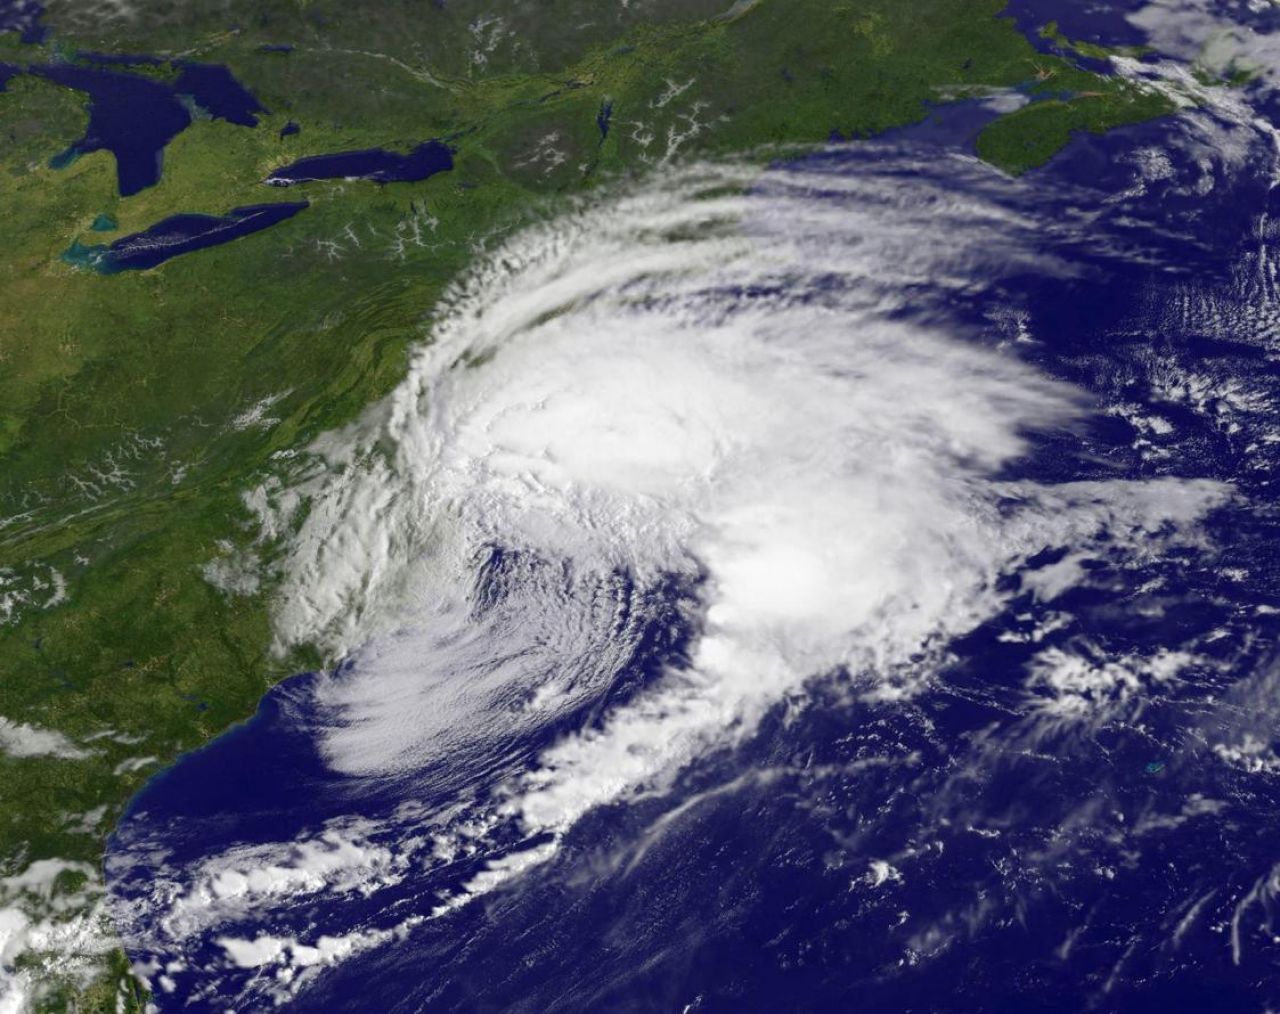 Etats-Unis : la tempête Hermine fait une autre victime, les plages de New York interdites